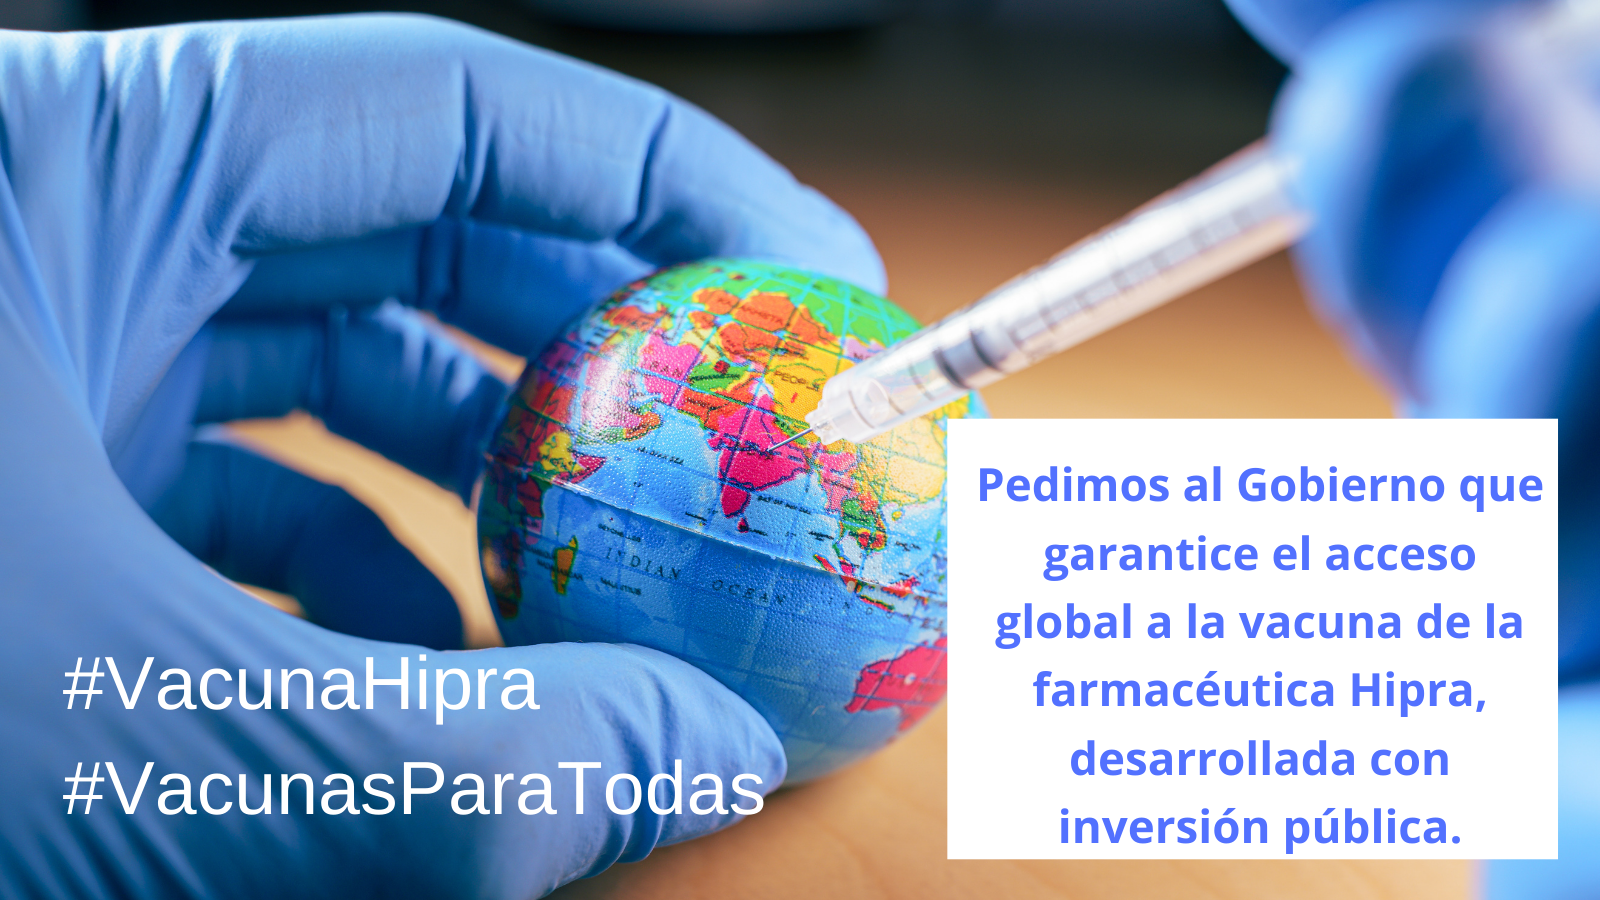 20 organizaciones pedimos al Gobierno que garantice el acceso global a la vacuna de la farmacéutica Hipra